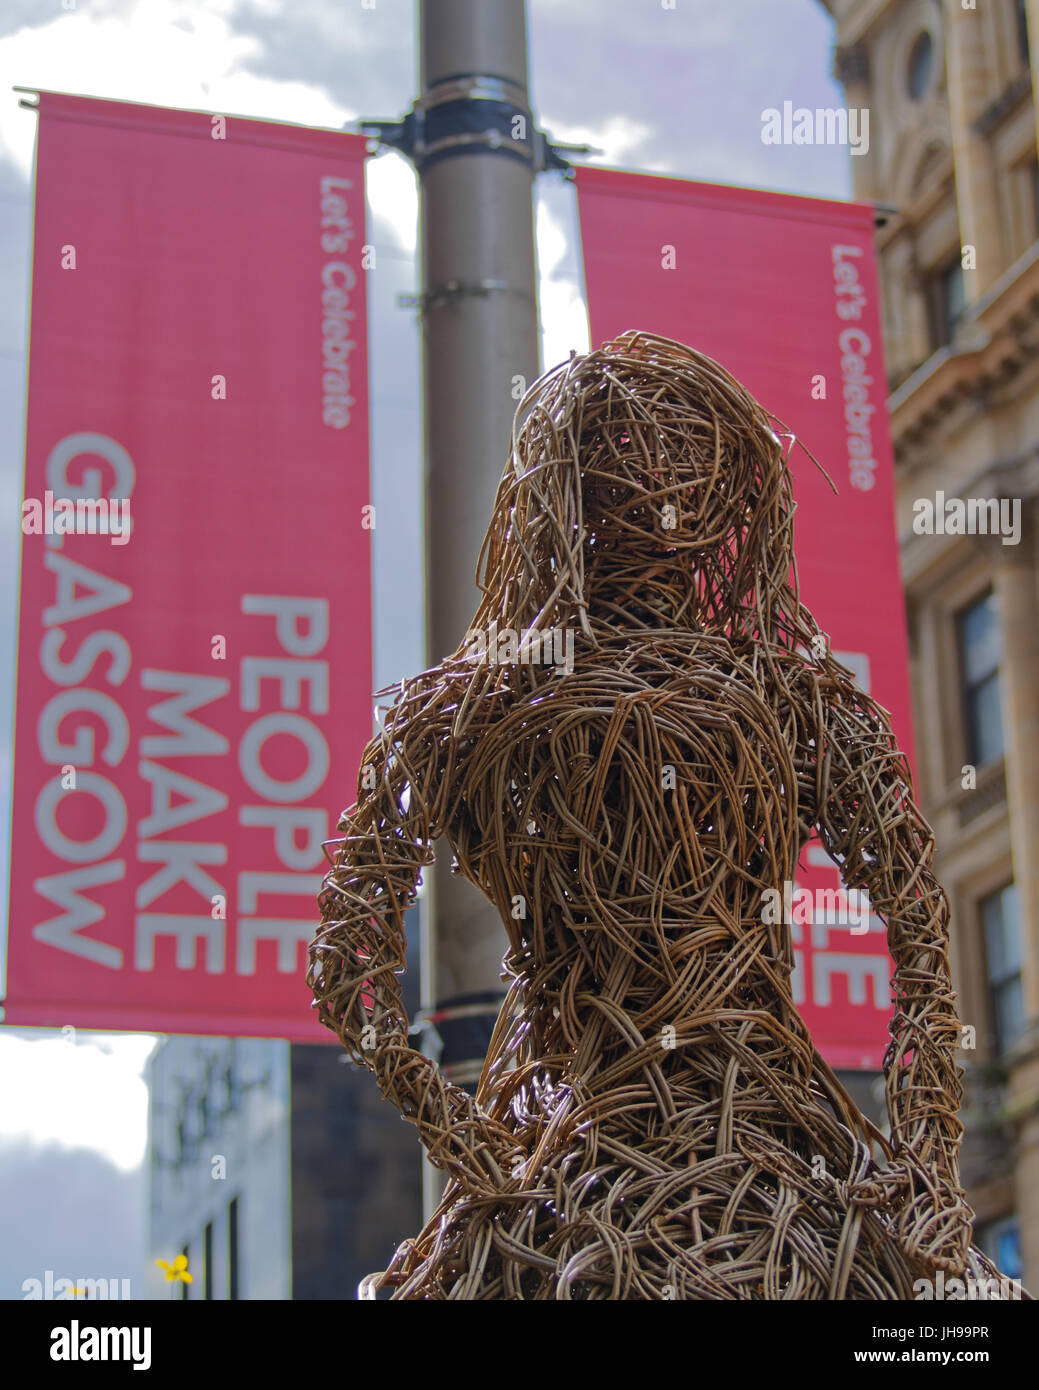 La gente hace Glasgow pancartas junto a tejer canasto mujer ilustraciones estatua en Buchanan Street Foto de stock